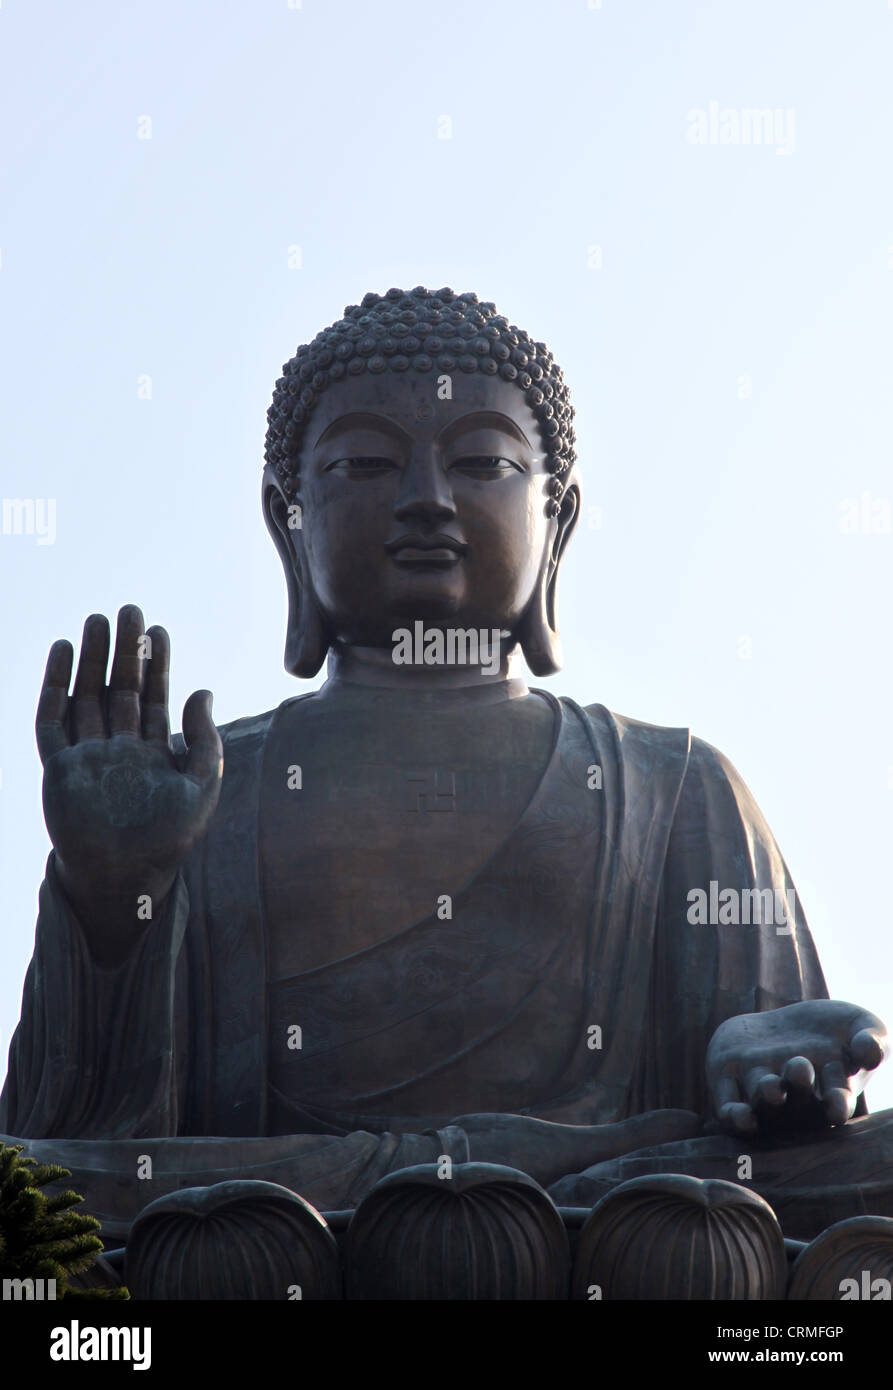 Es ist ein Foto eines großen Buddha in Hong Kong auf der Insel Lantau. Ihr Name lautet Tian Tan Buddha. Es ist sehr beliebt und touristischen Stockfoto